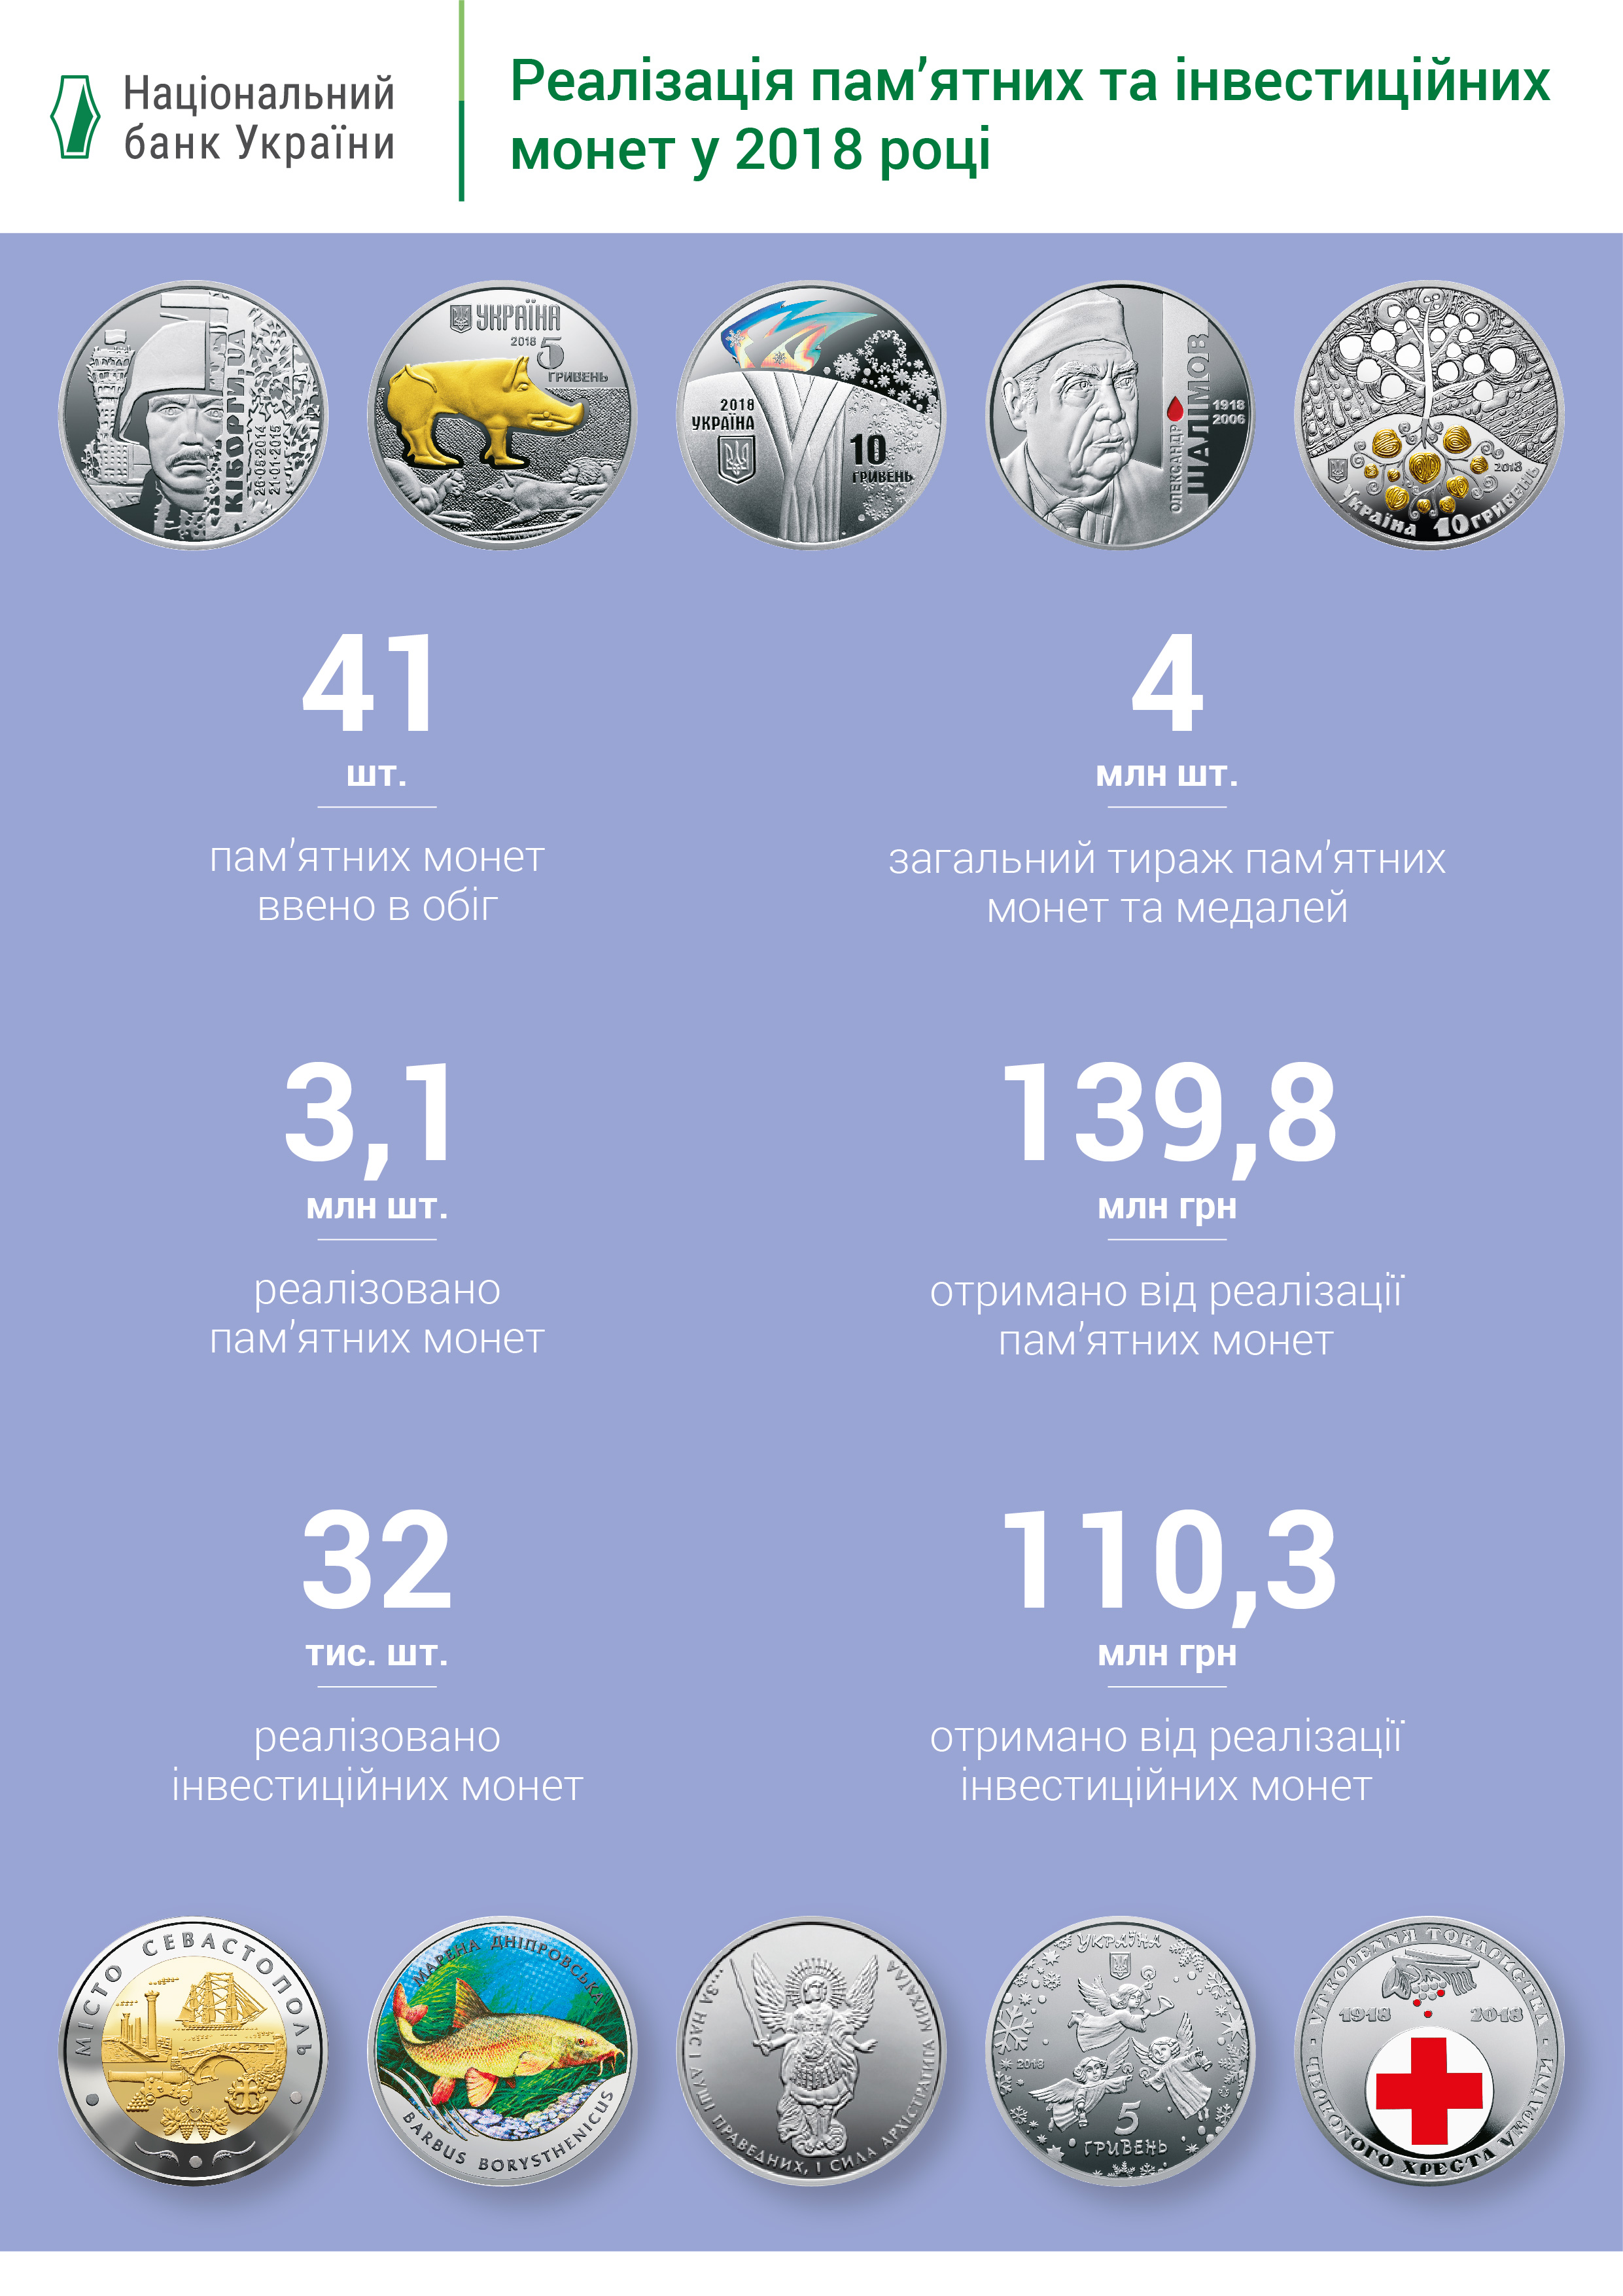 НБУ в разы увеличил реализацию памятных монет